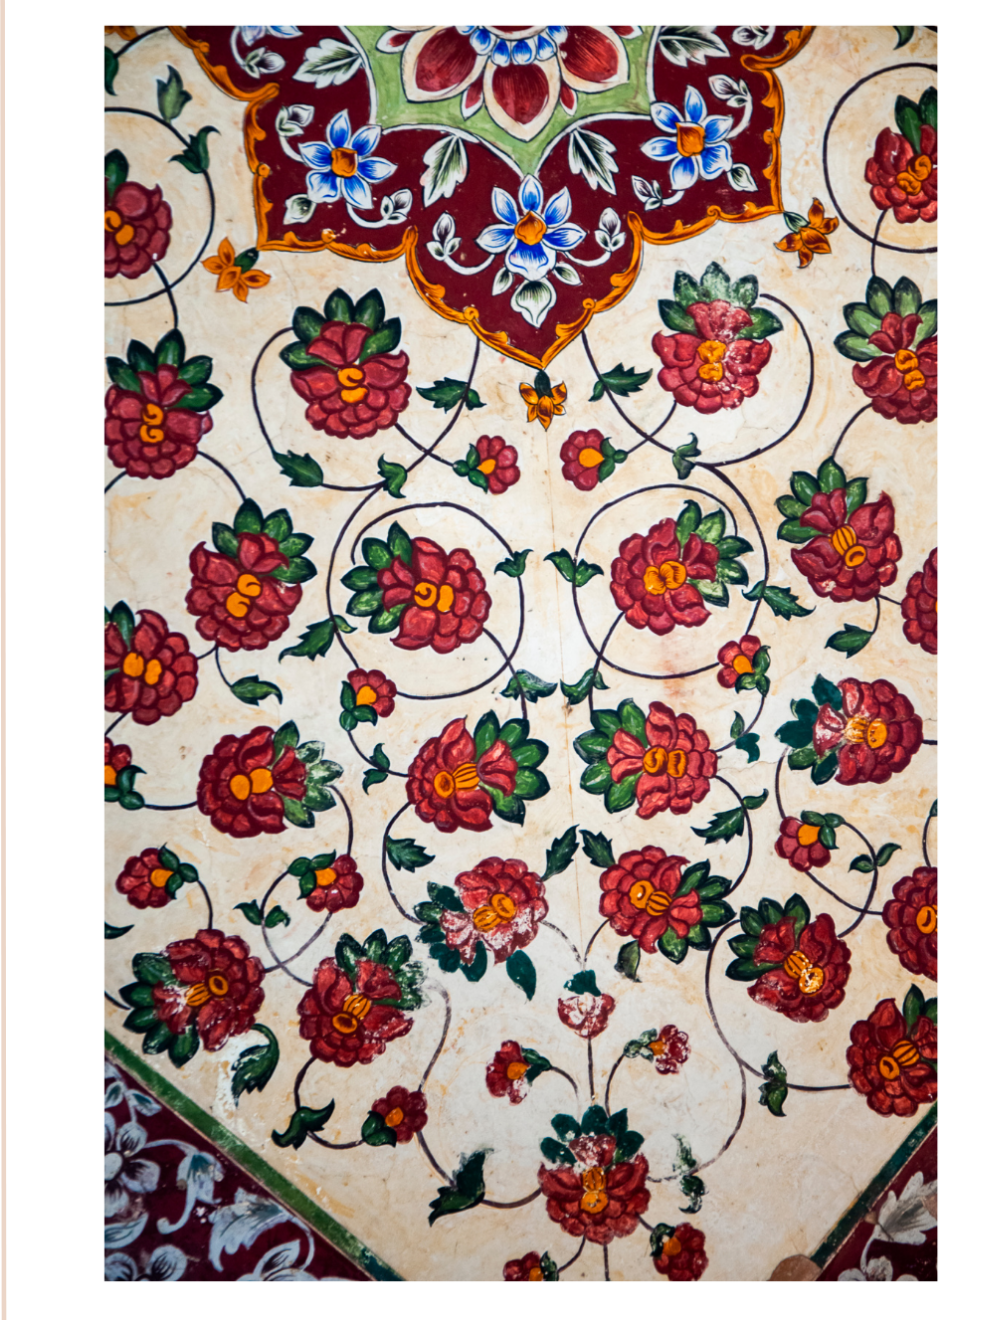 کارت پستال کاشیکاری ایرانی | Persian Tiles Card